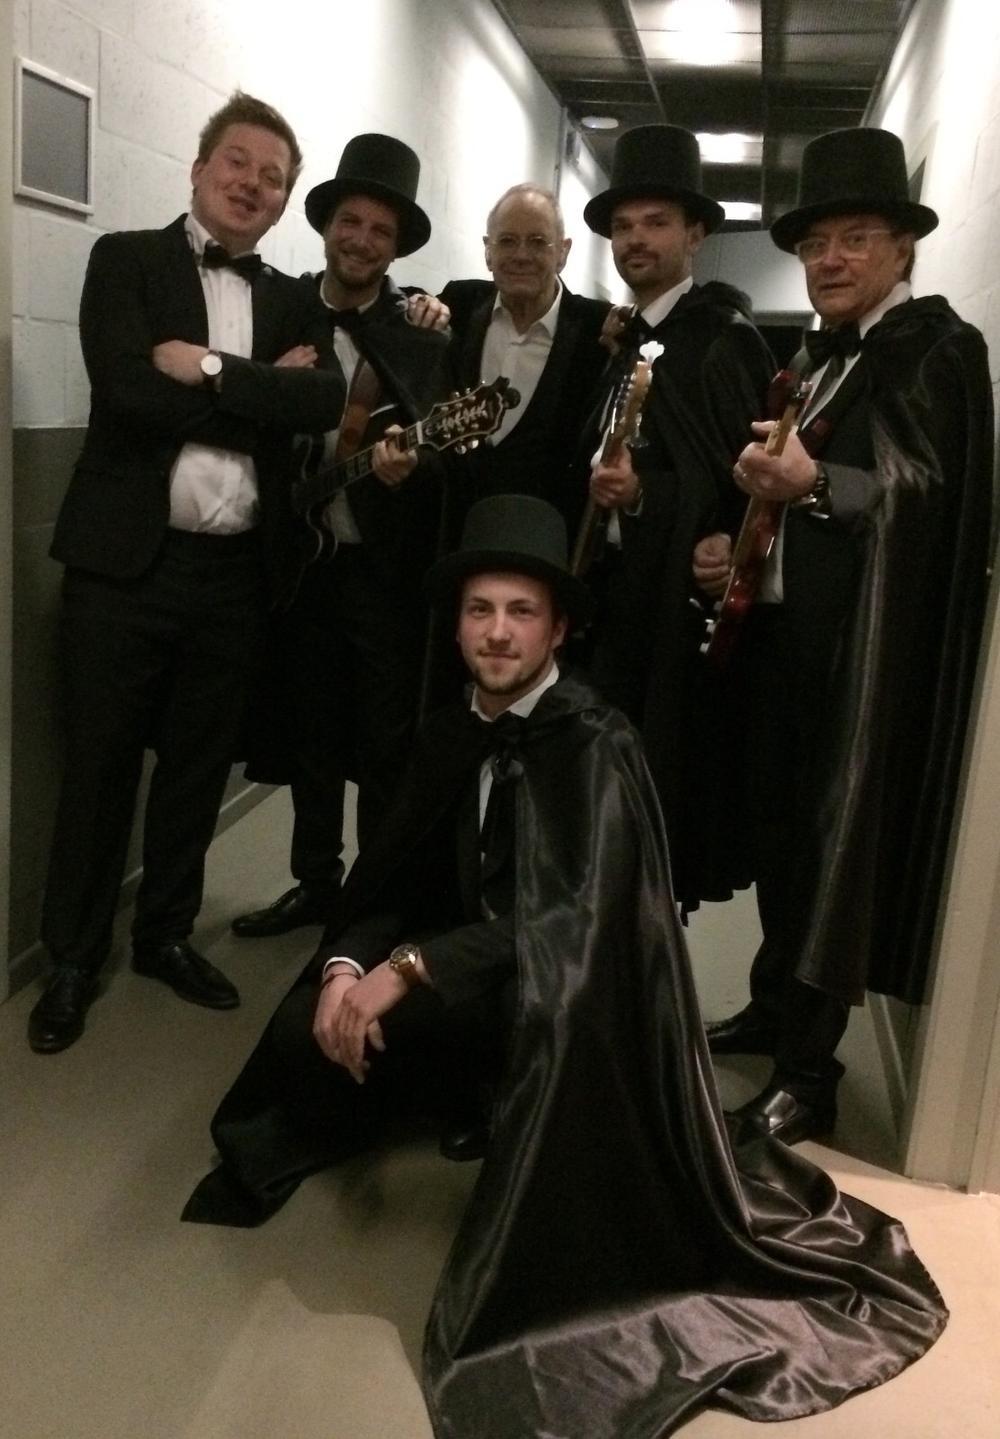 Lajos Lievens (gehurkt) met Lajos & The Gang backstage bij Rob De Nijs in de Lotto Arena in Antwerpen. Rechts zie je Bert, de broer van Rob.